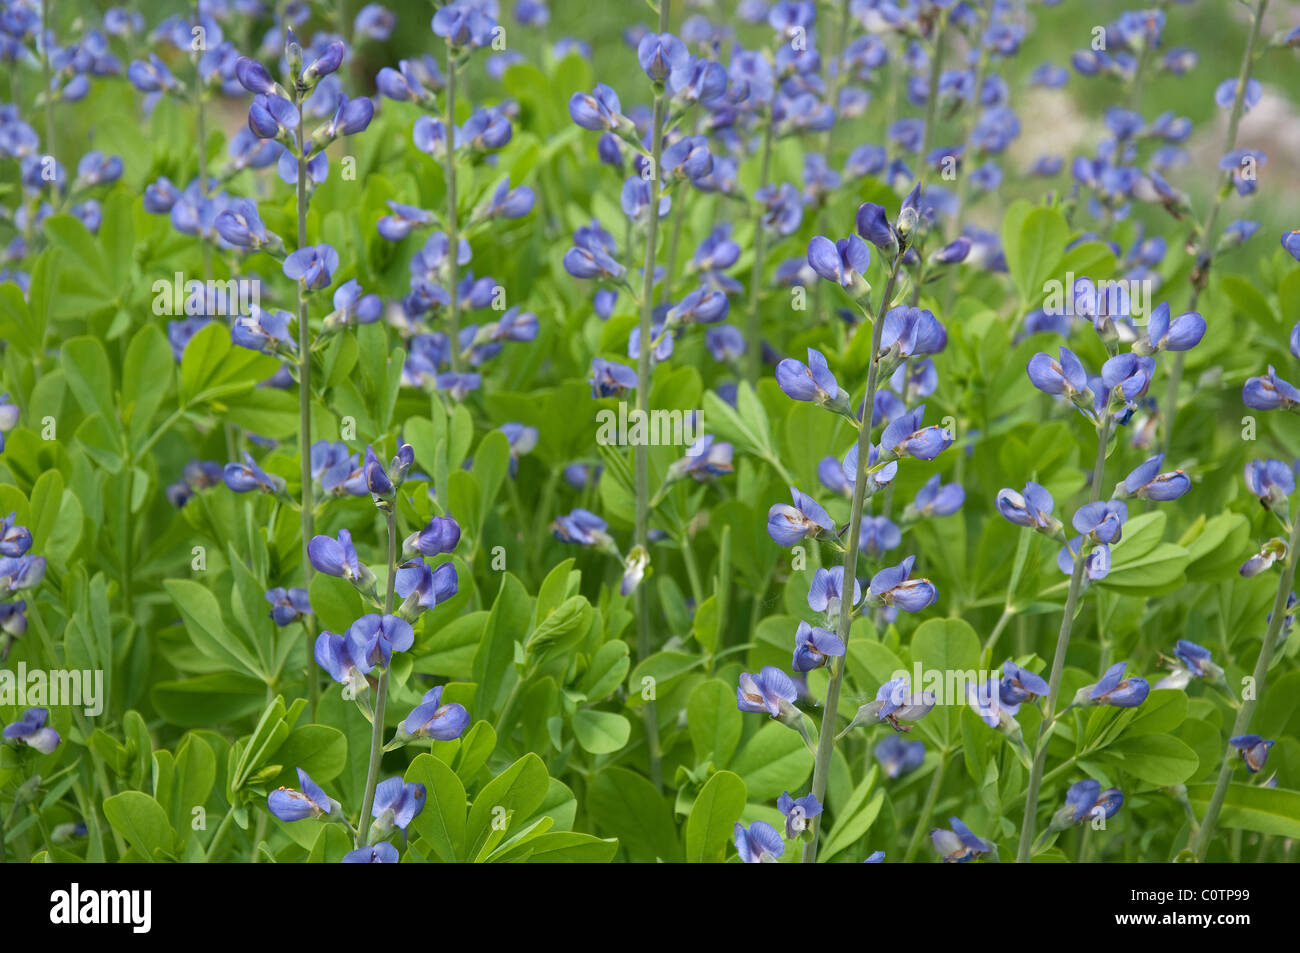 Blue Wild Indigo, Blue False Indigo (Baptisia australis), flowering plants. Stock Photo